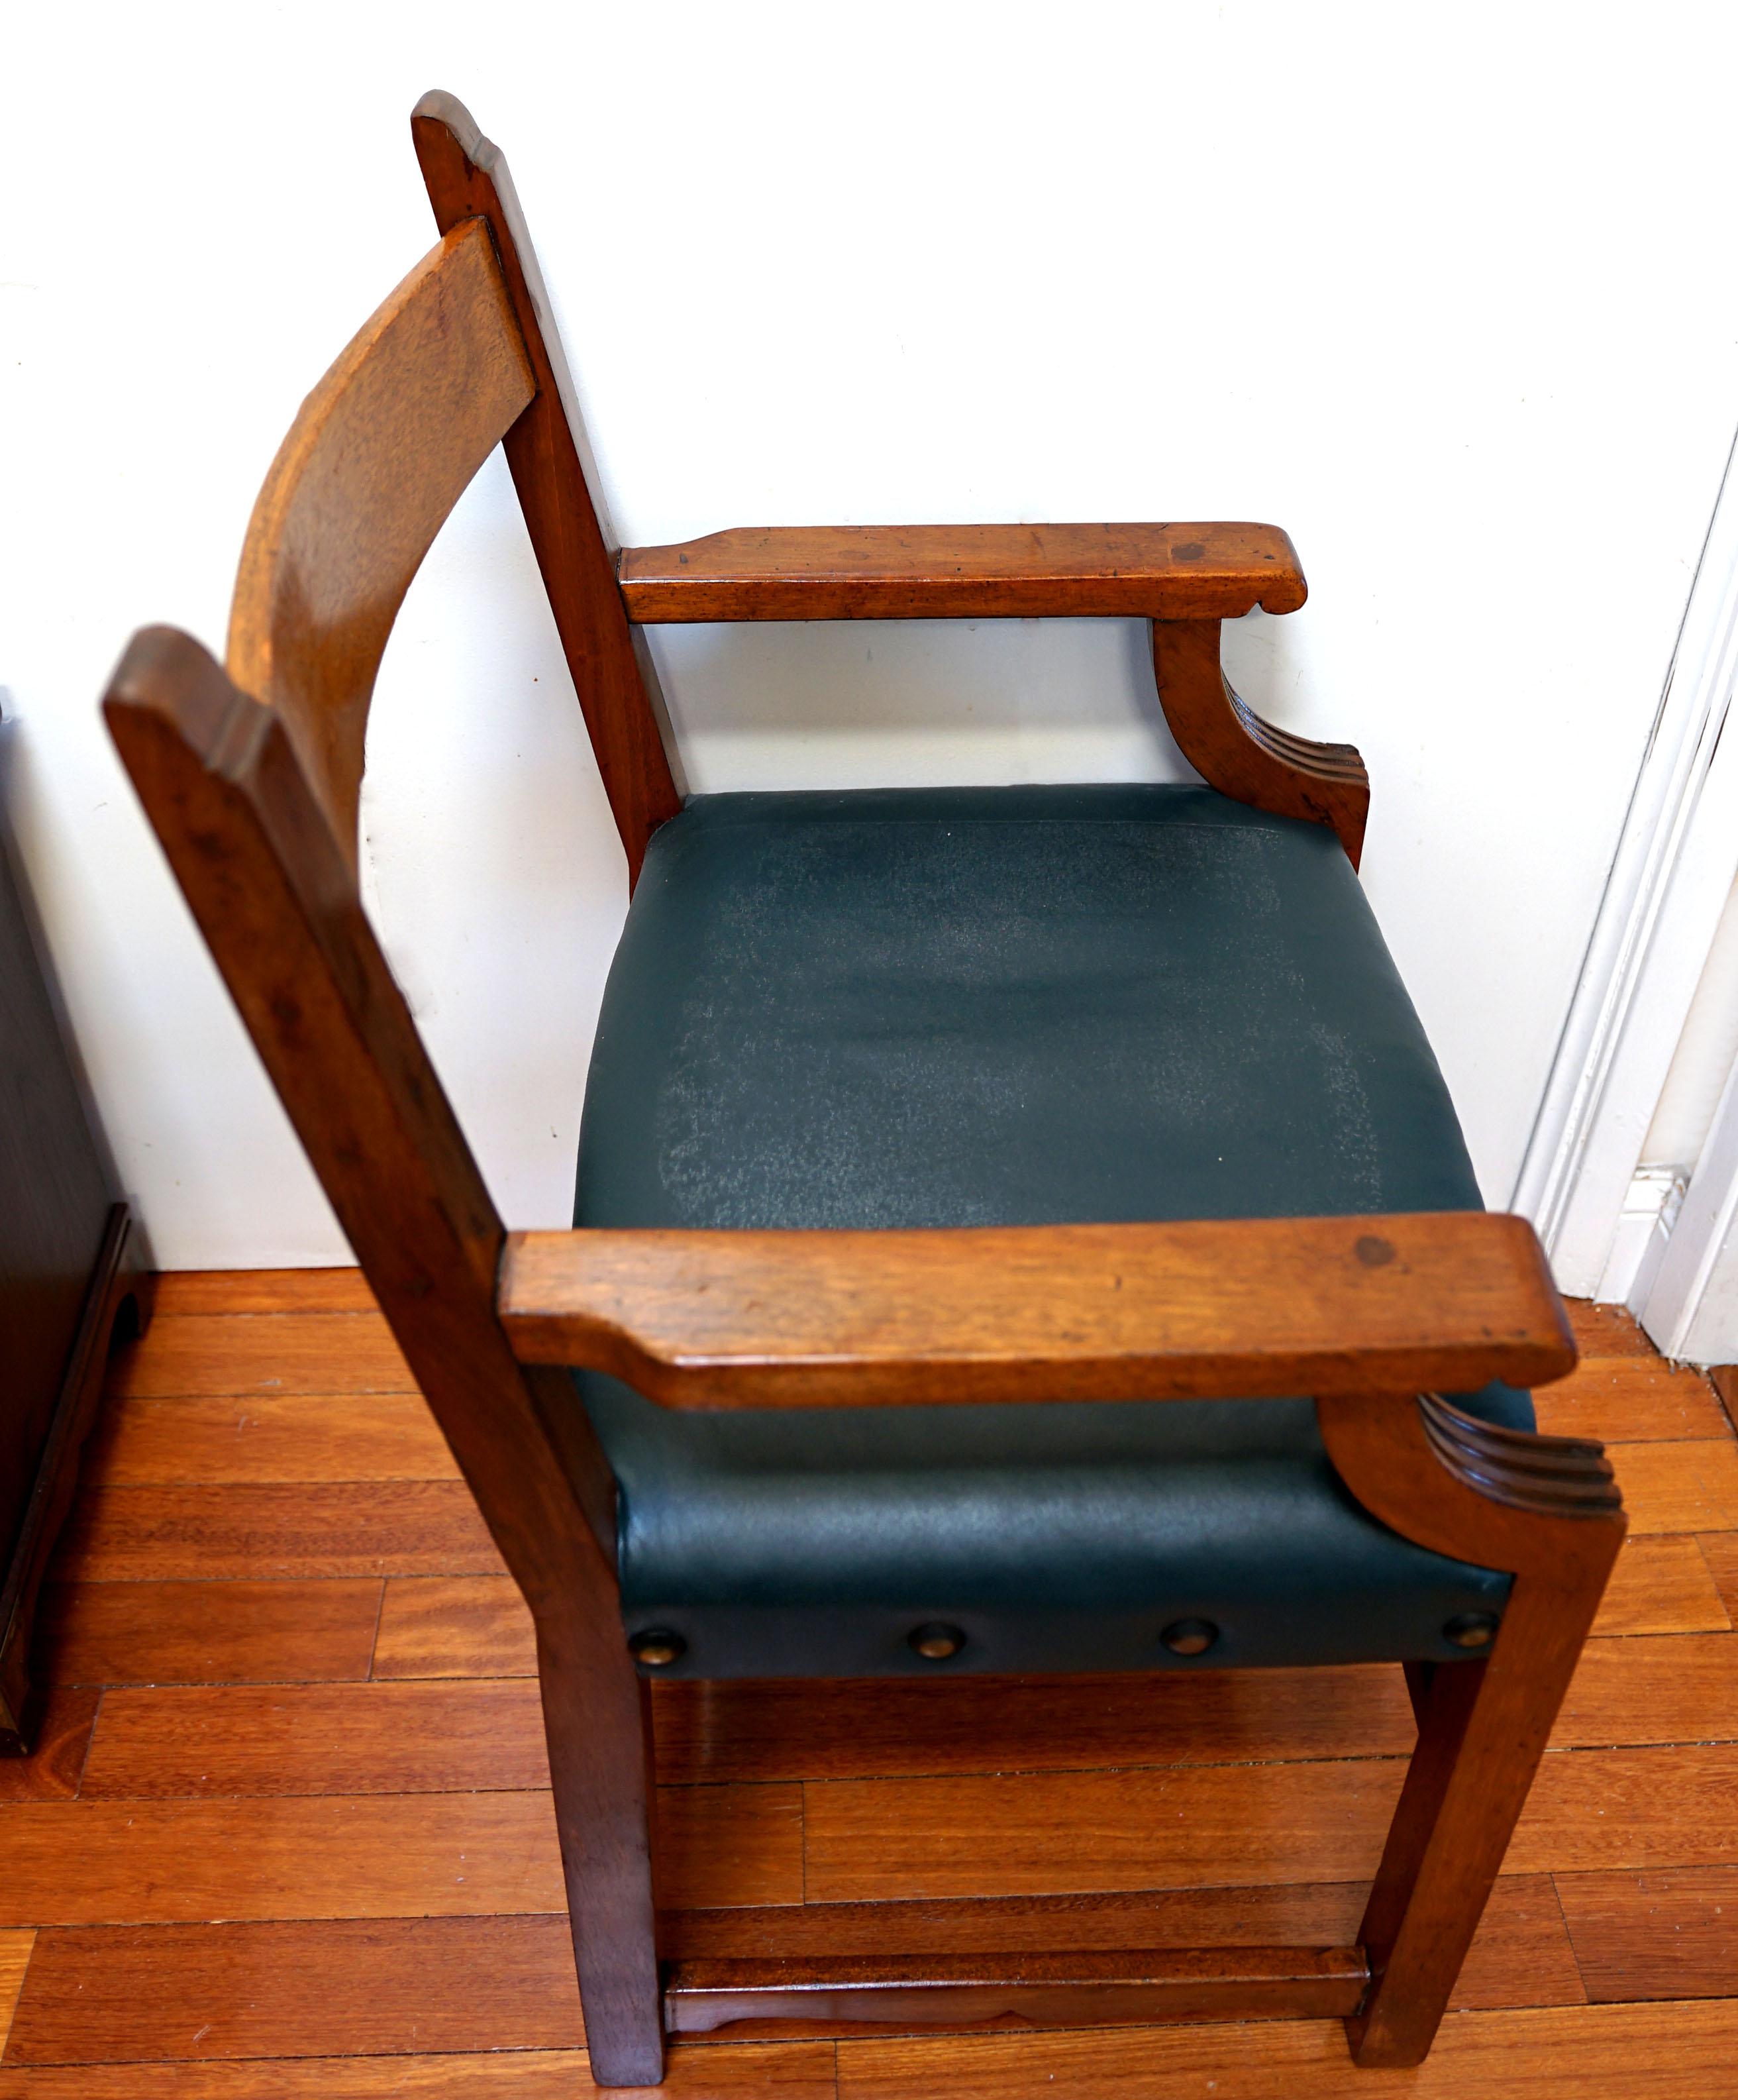 Un fauteuil ouvert en chêne sculpté de style Regency provenant d'Angleterre, de la fin du XIXe siècle, avec une touche de modernité, est un tour de force en matière de design. Le bois a magnifiquement vieilli au fil du temps et présente une patine